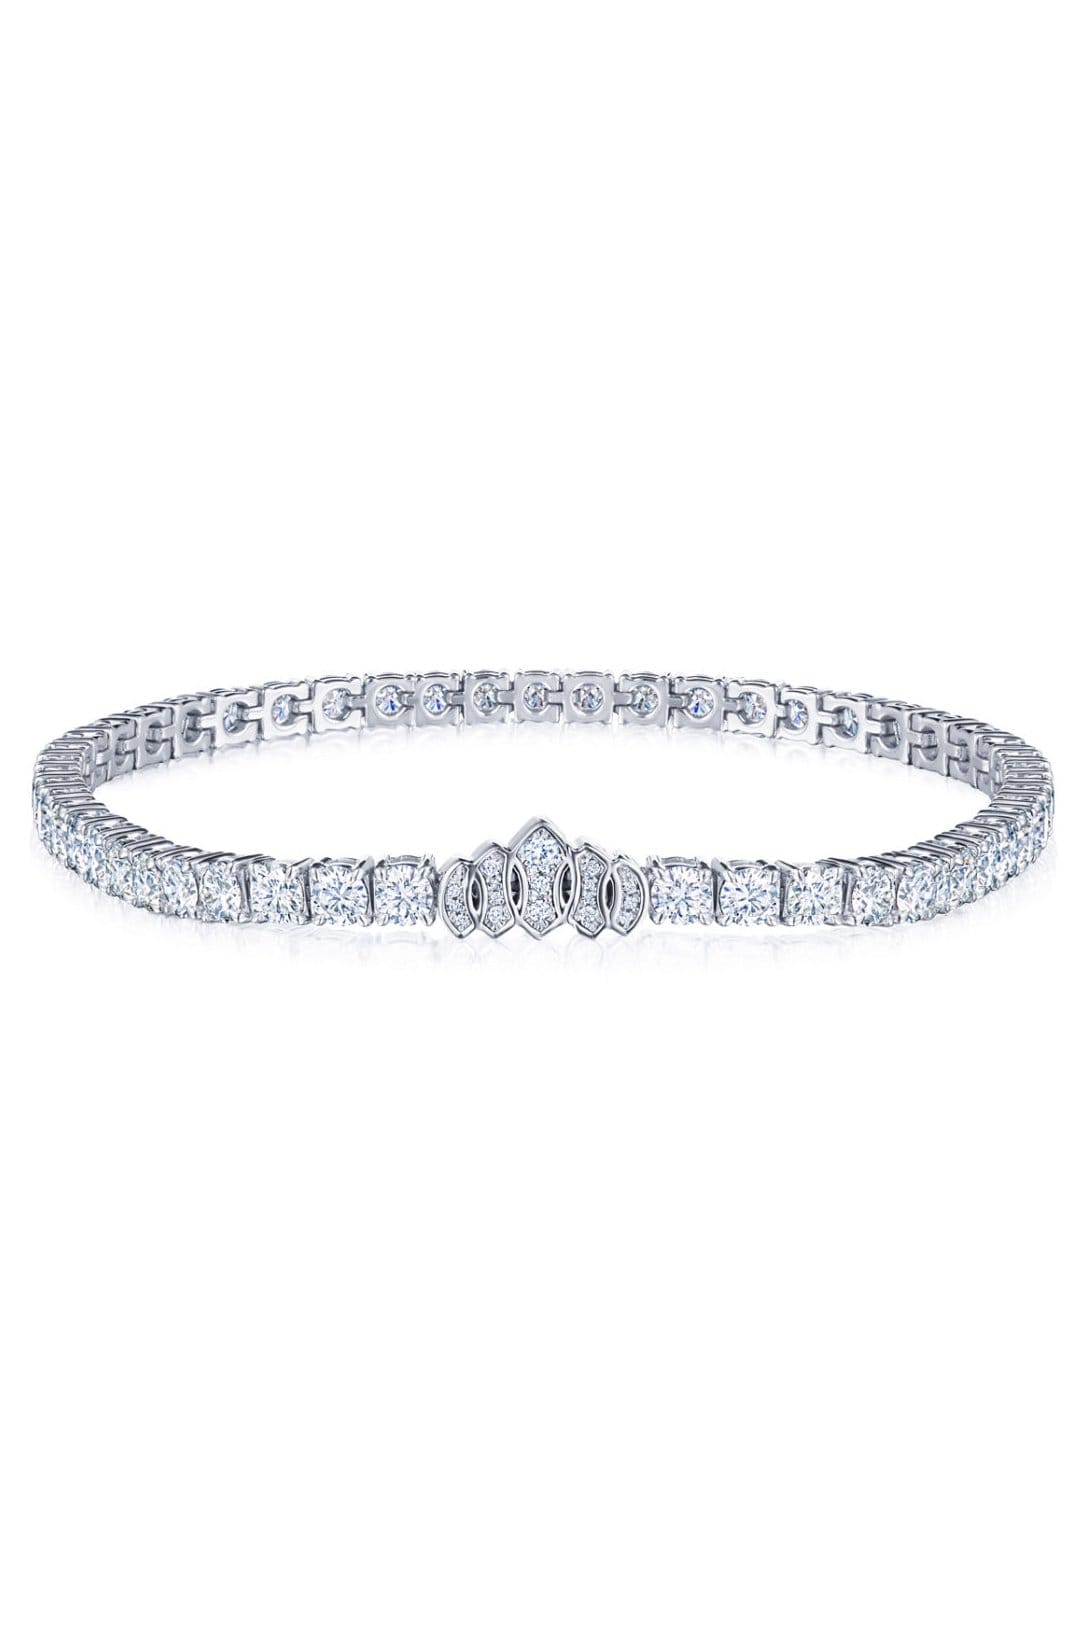 KWIAT-Signature Tiara Diamond Line Bracelet-WHITE GOLD